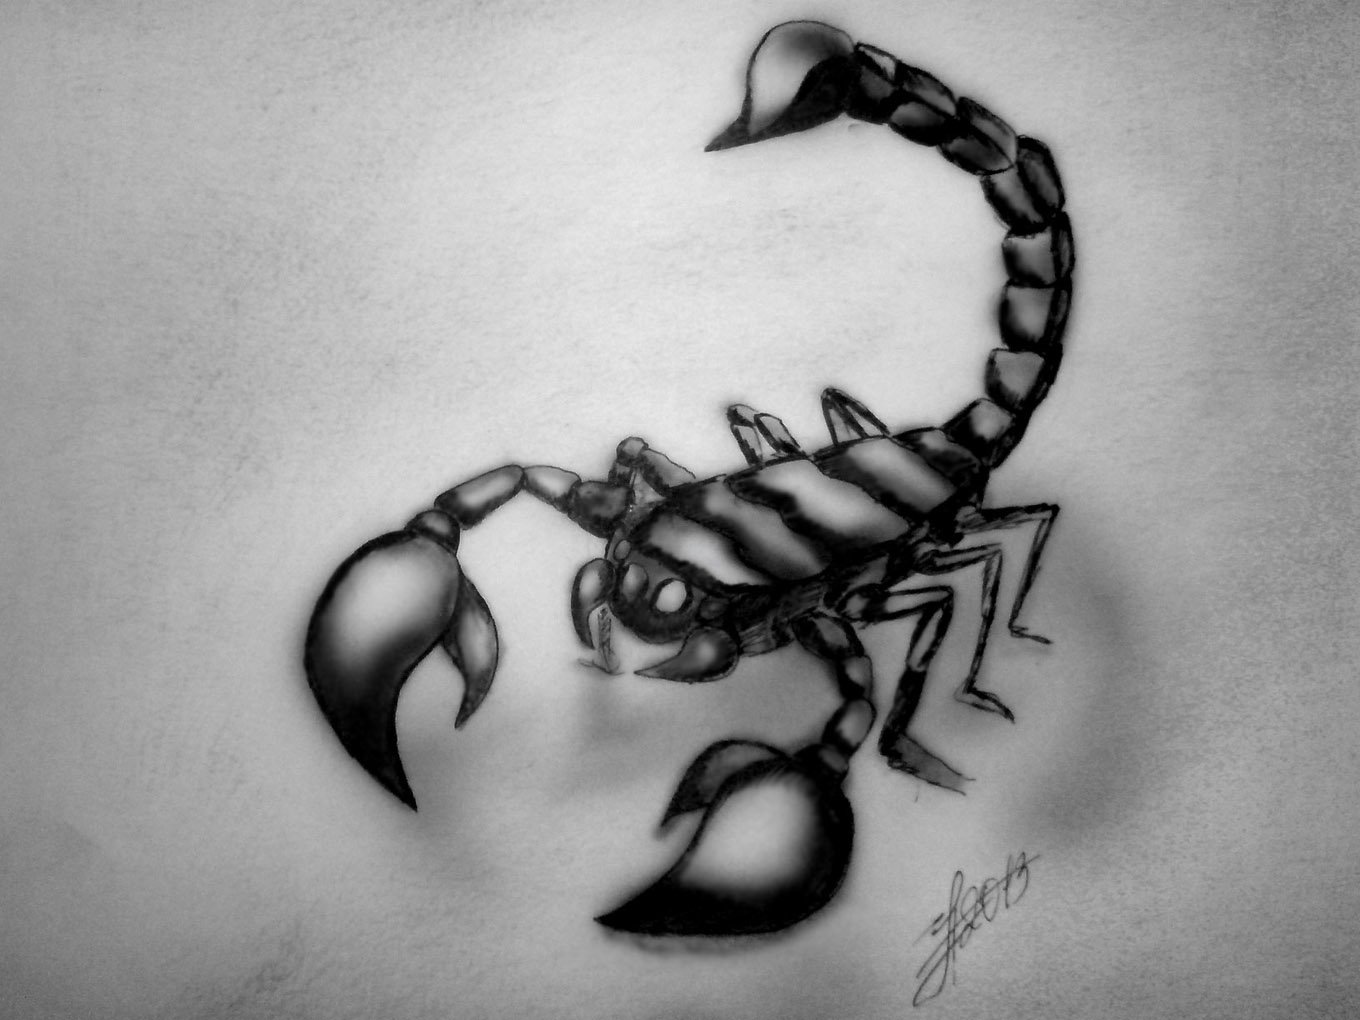 Значение татуировки Скорпион